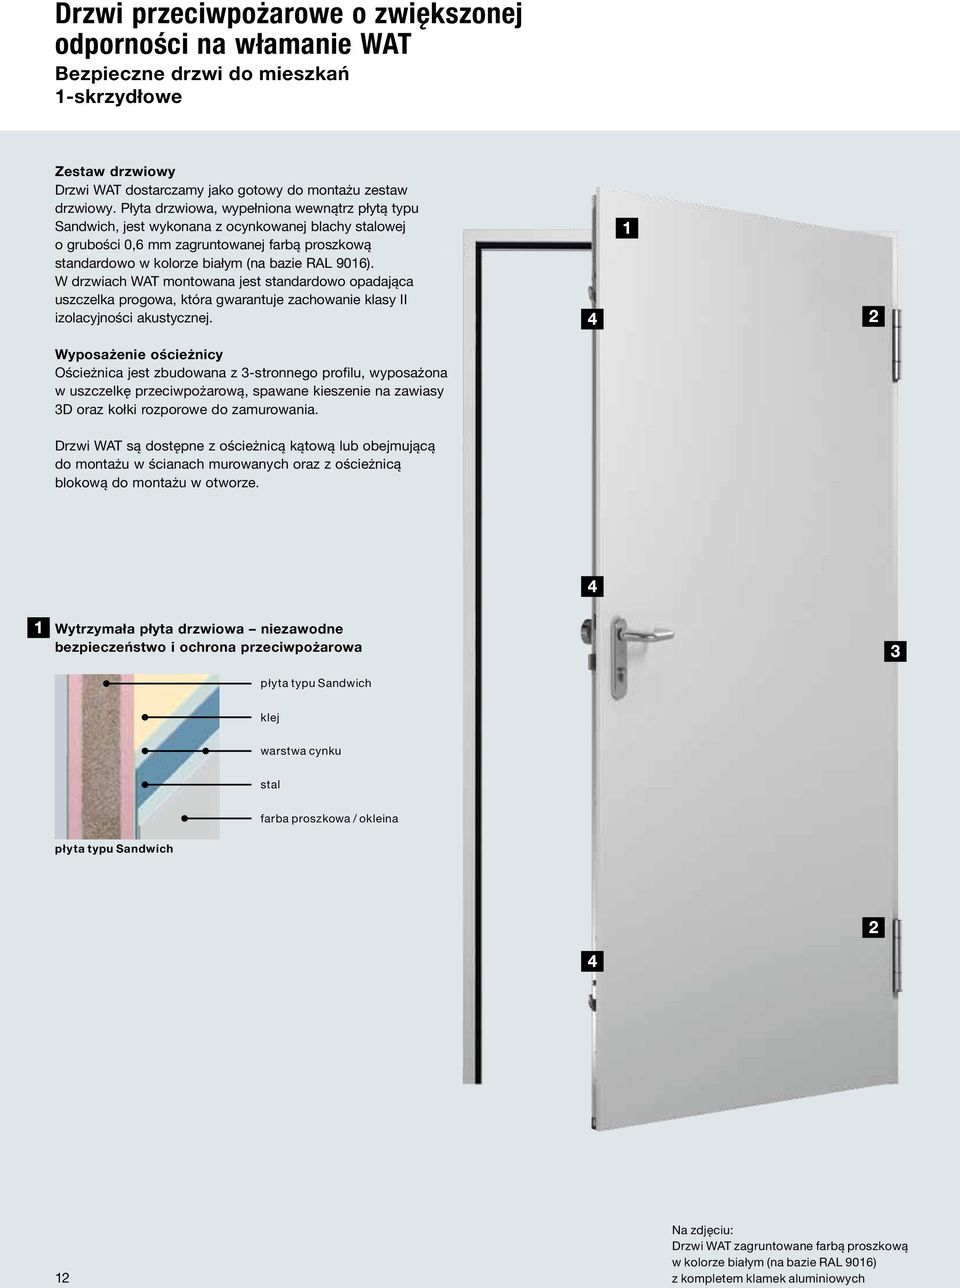 W drzwiach WAT montowana jest standardowo opadająca uszczelka progowa, która gwarantuje zachowanie klasy II izolacyjności akustycznej.